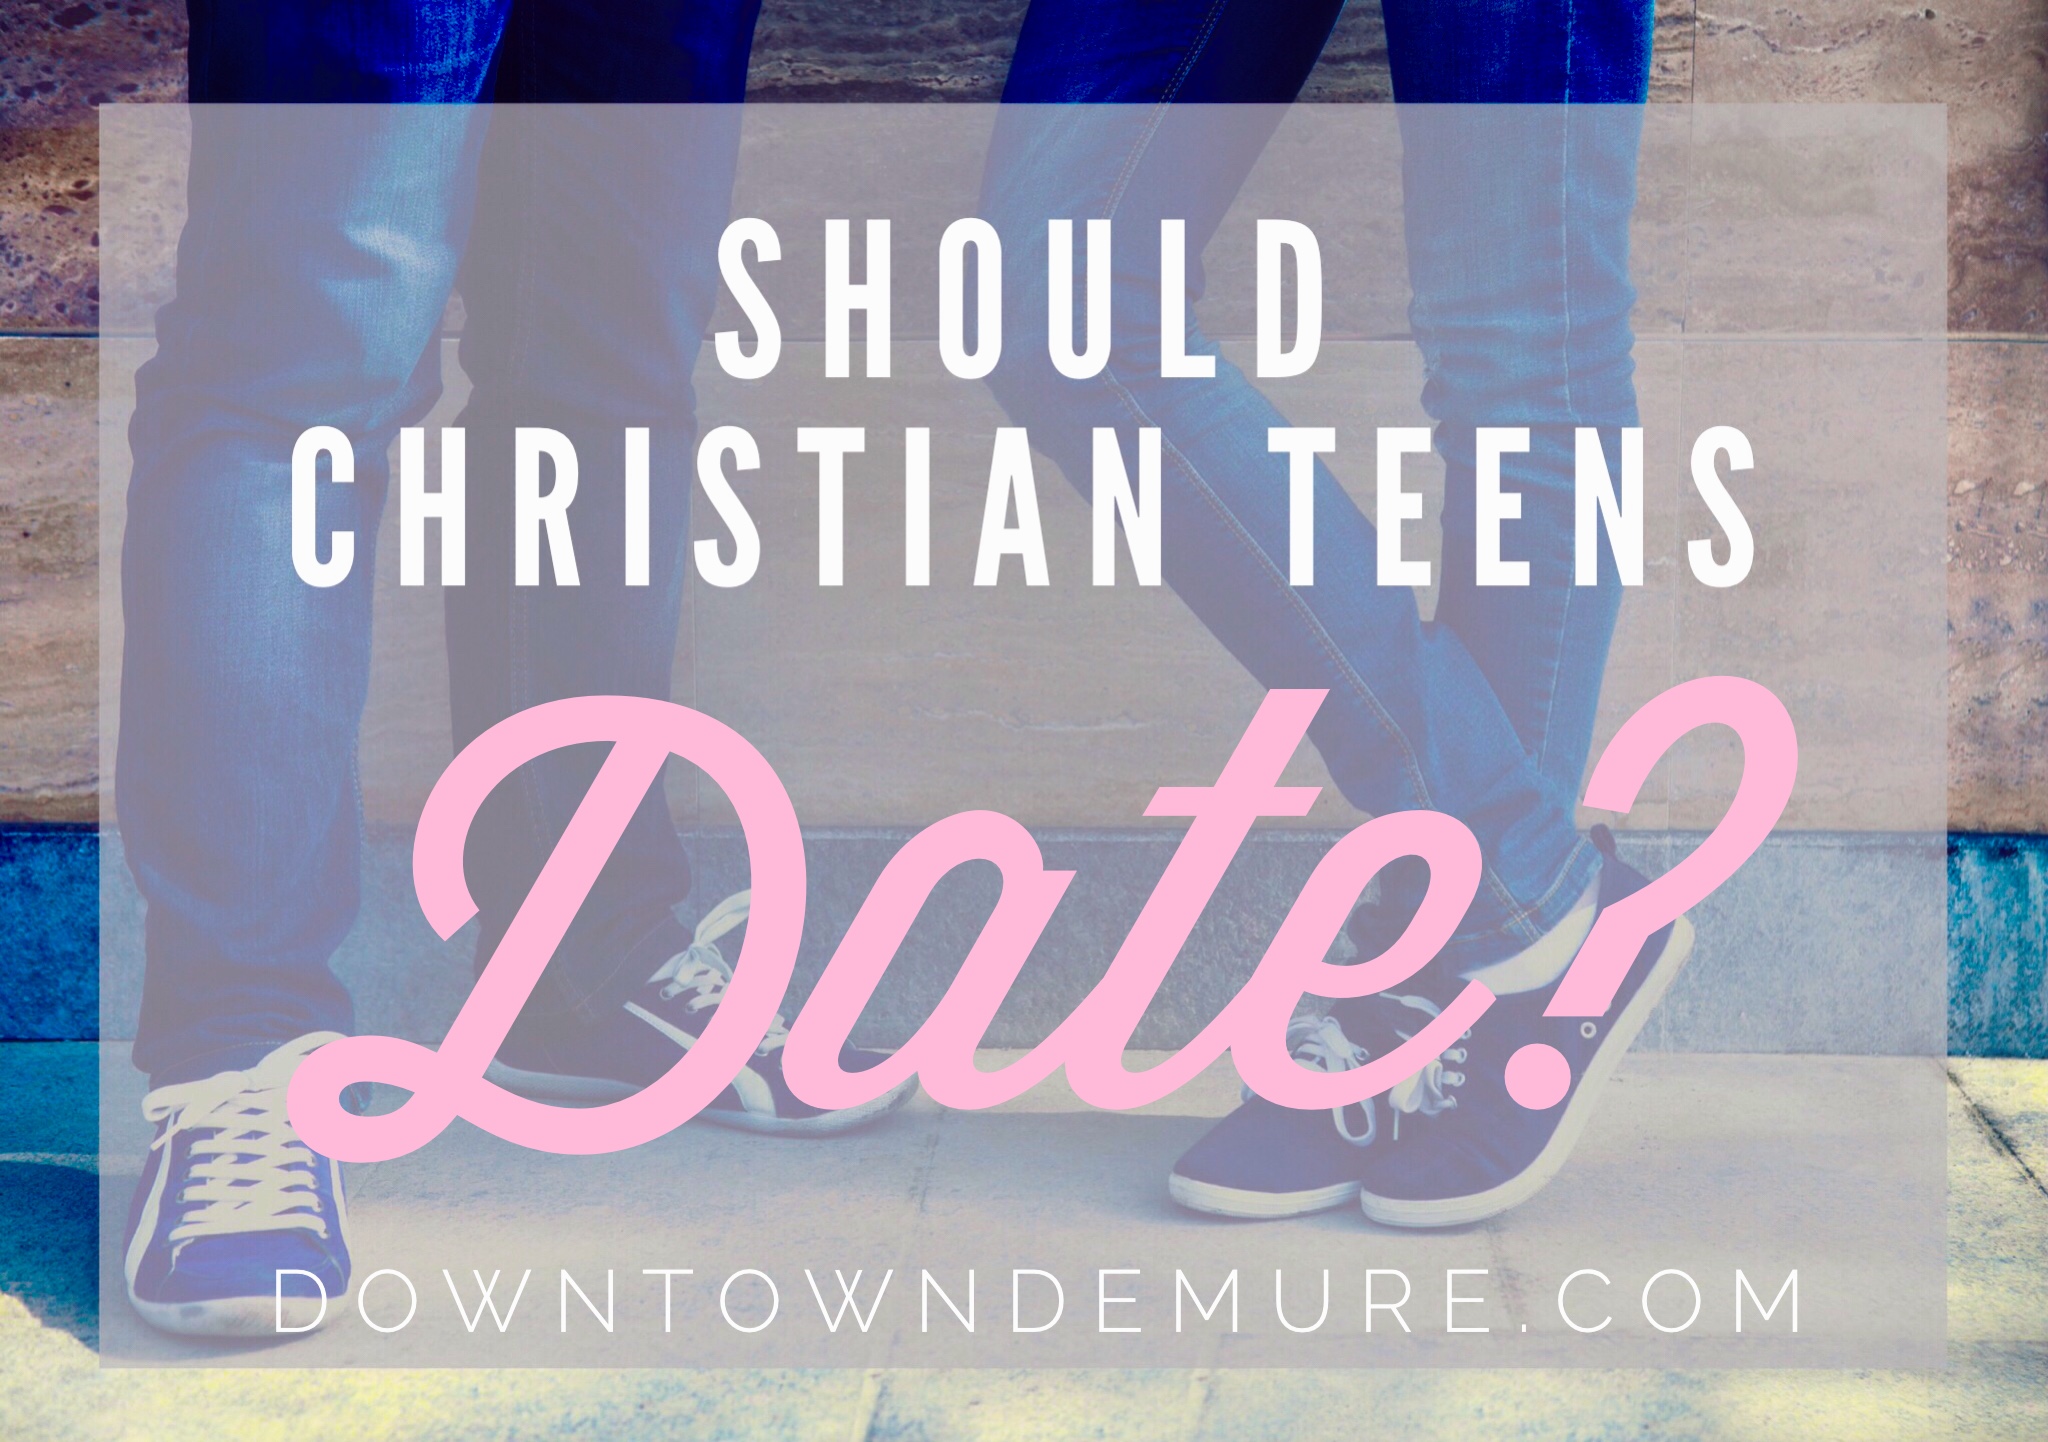 Christian über 50 dating sites